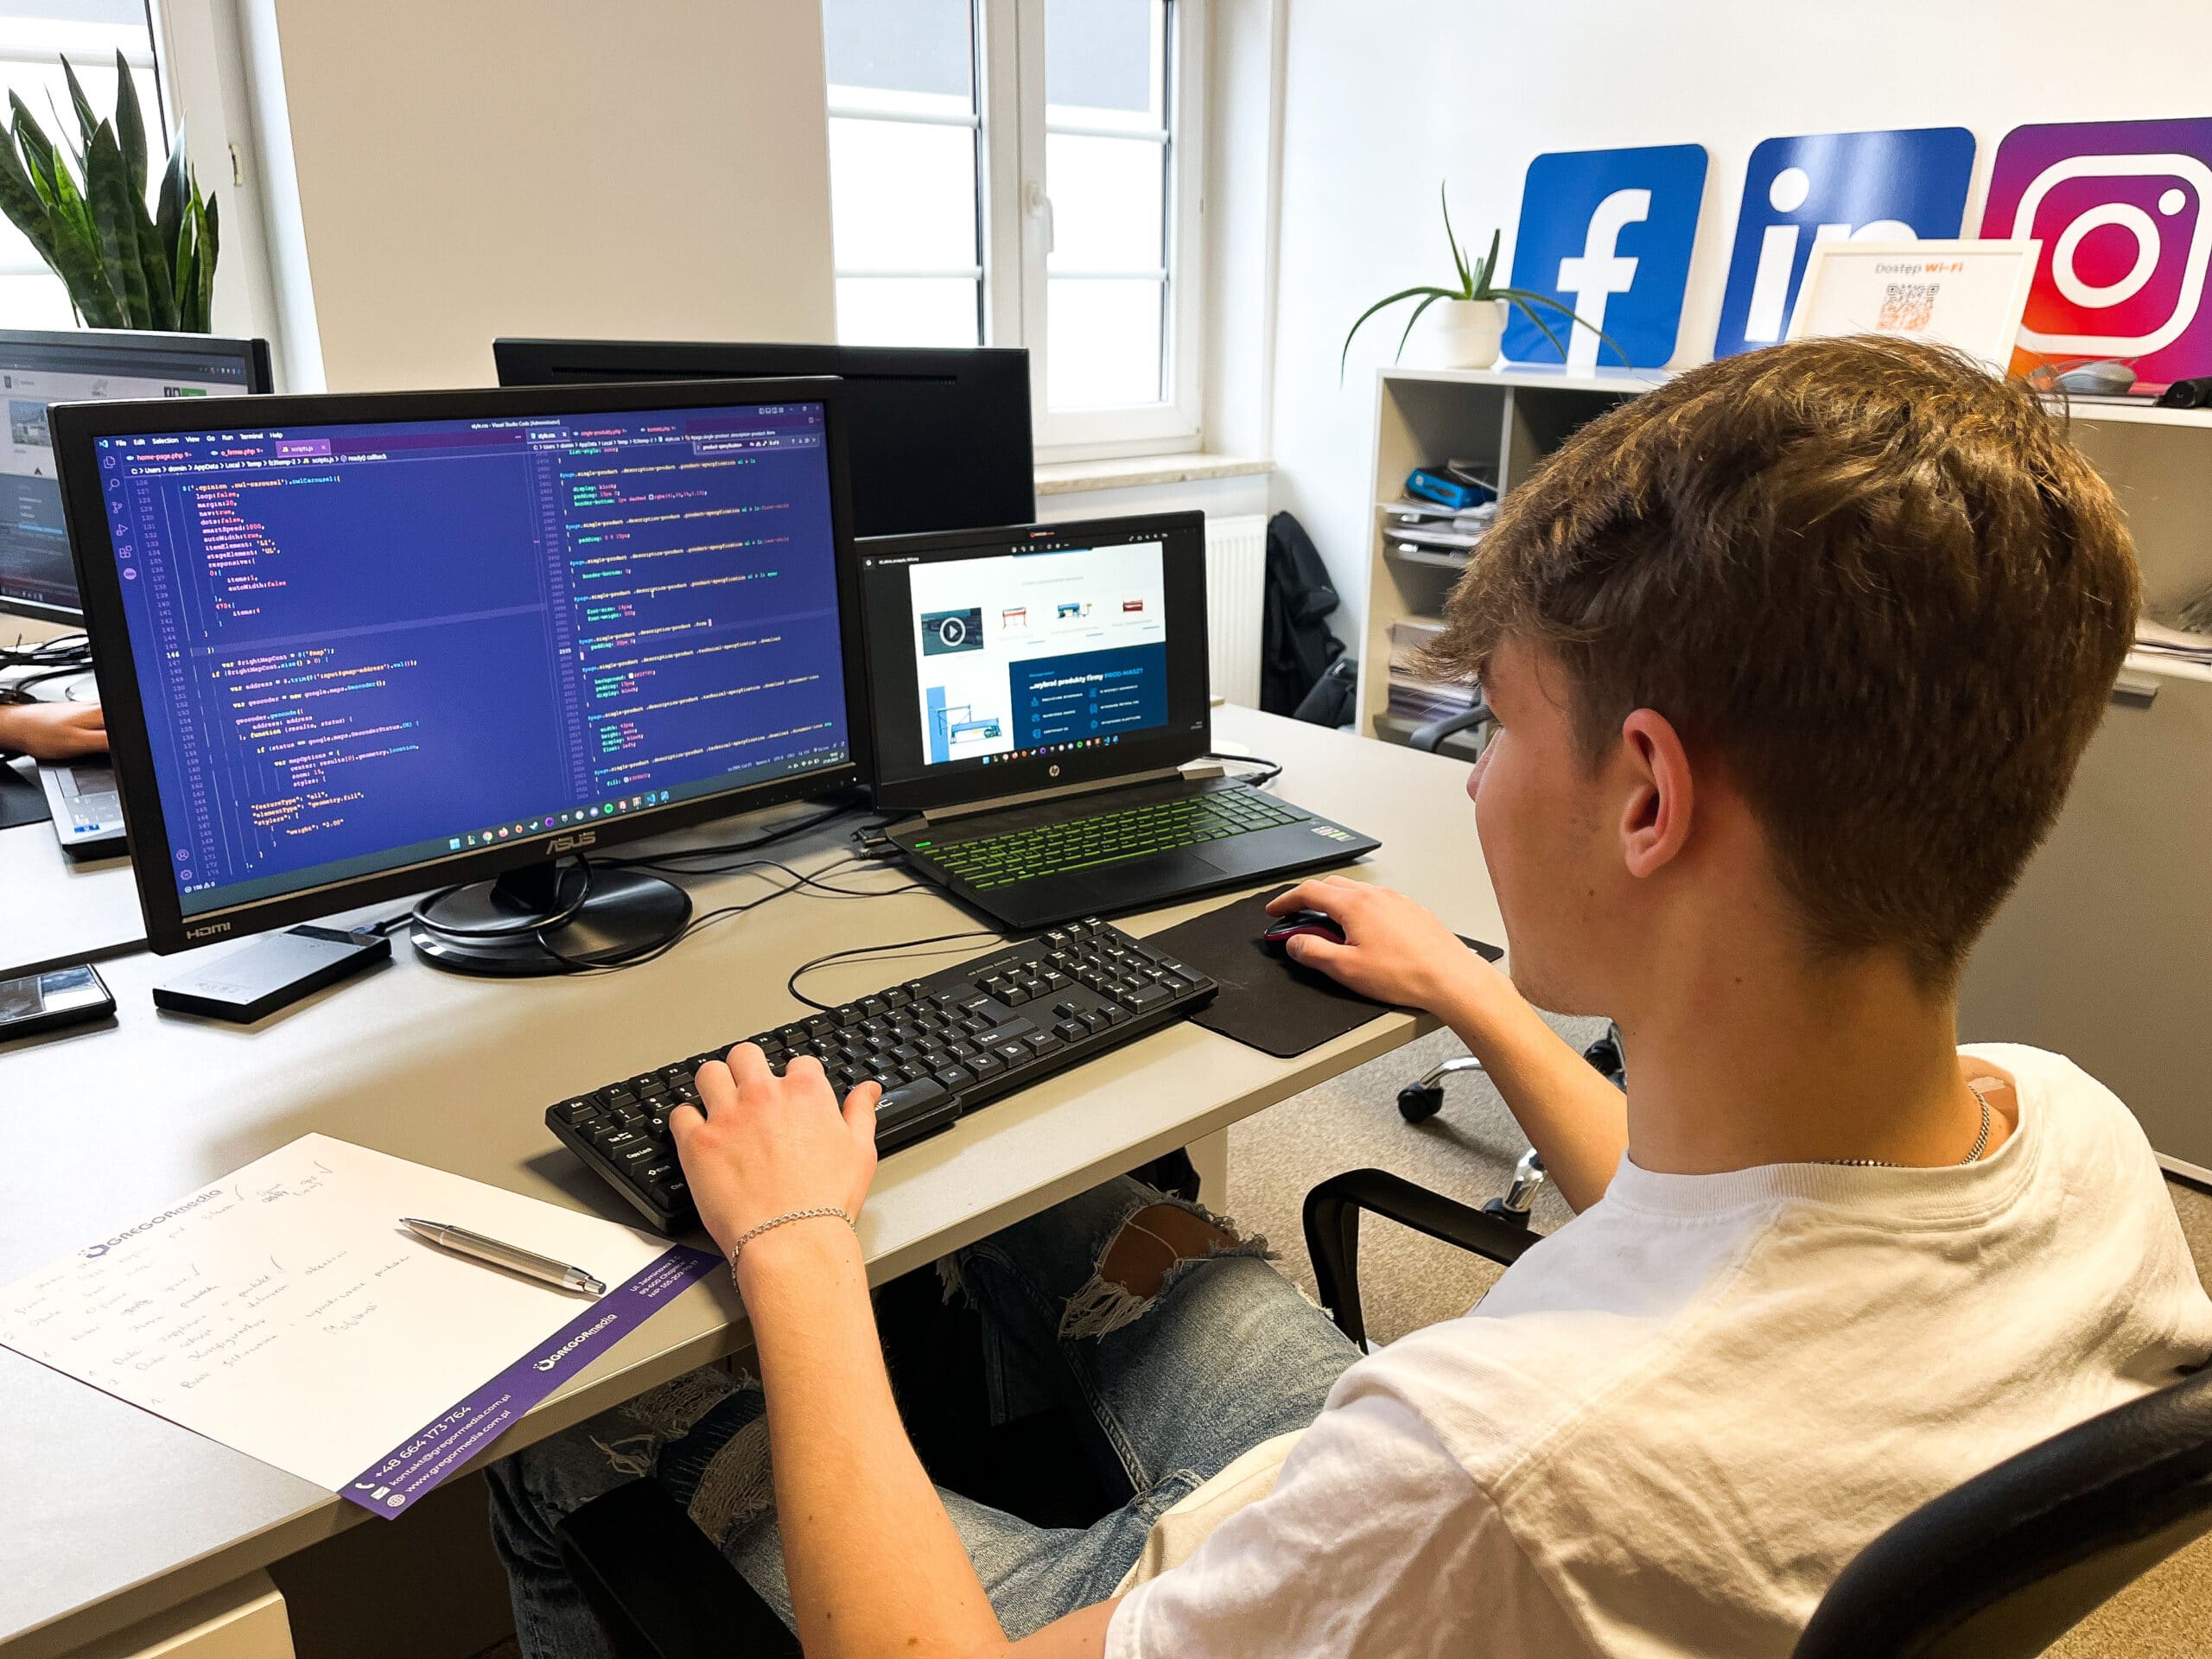 Młody mężczyzna przy biurku pracujący nad strategią marketingową przy użyciu komputera.